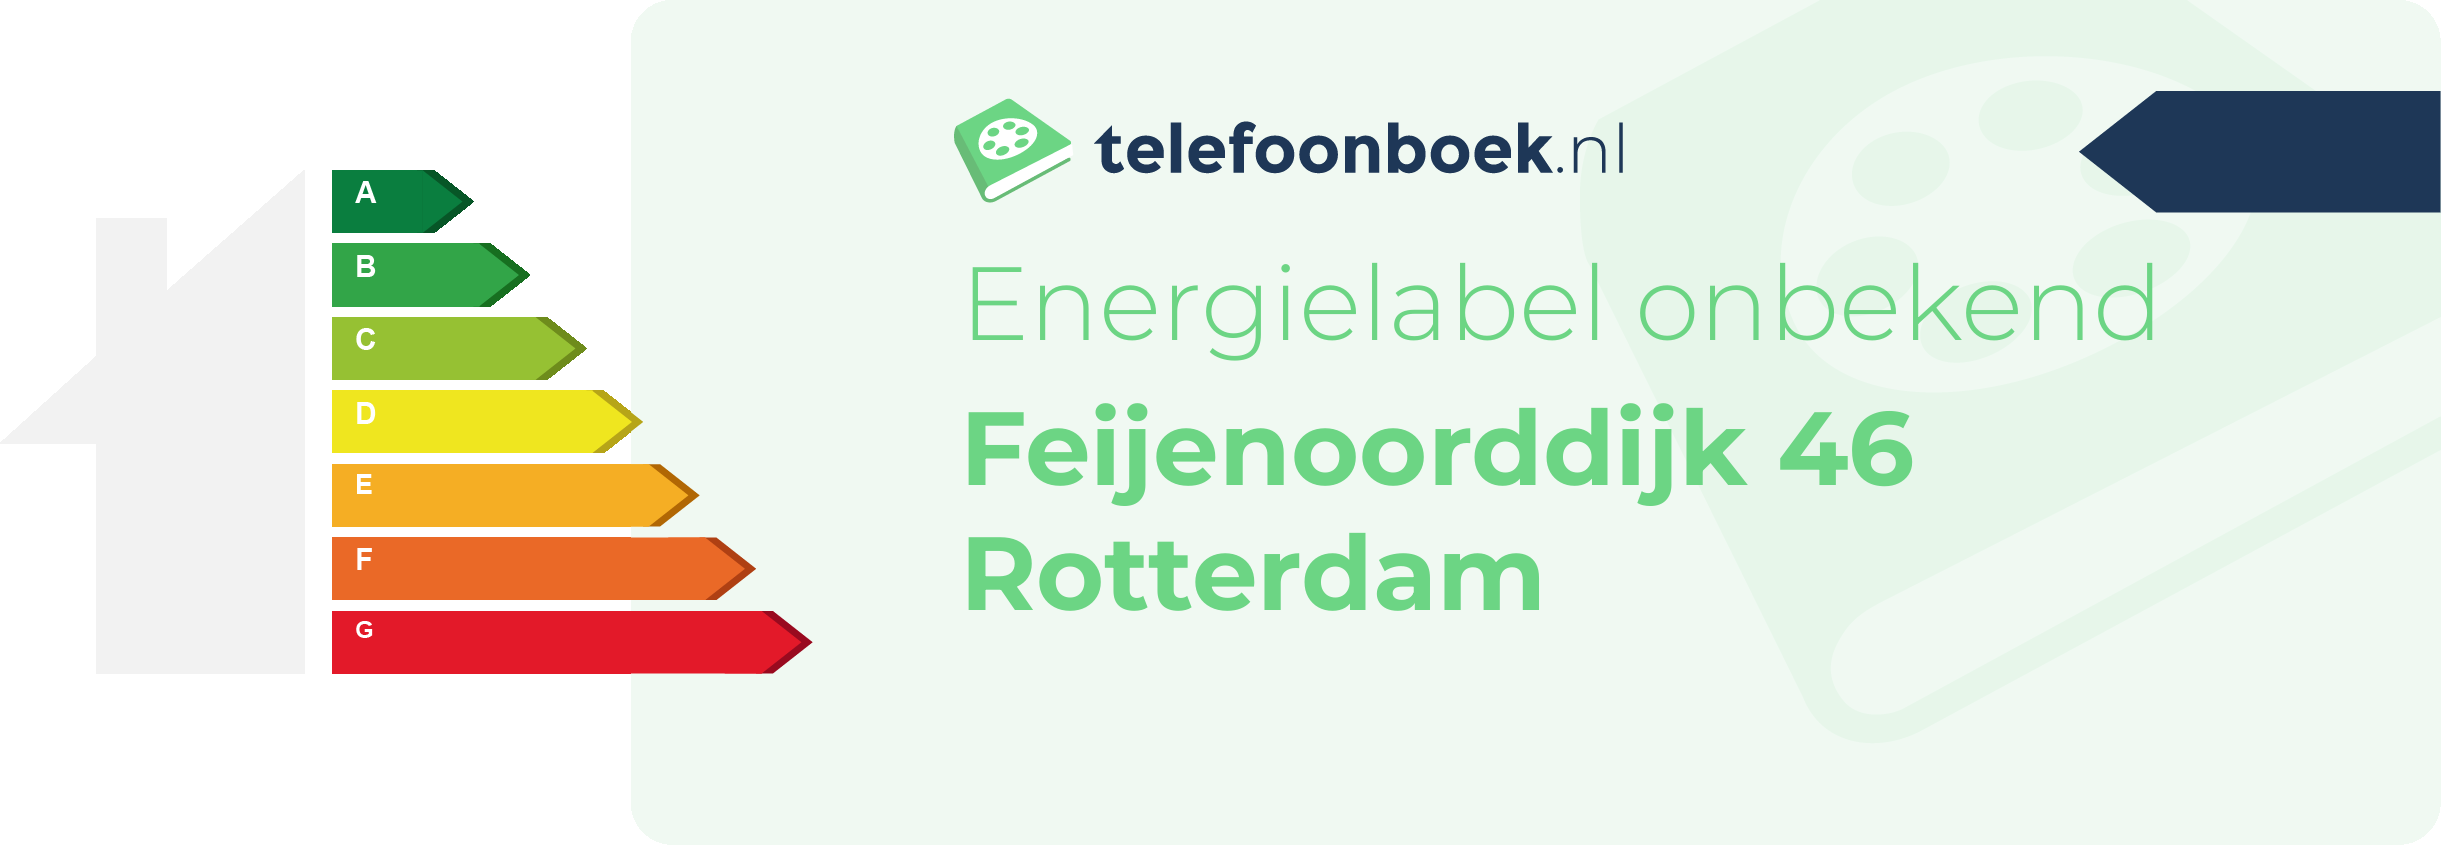 Energielabel Feijenoorddijk 46 Rotterdam